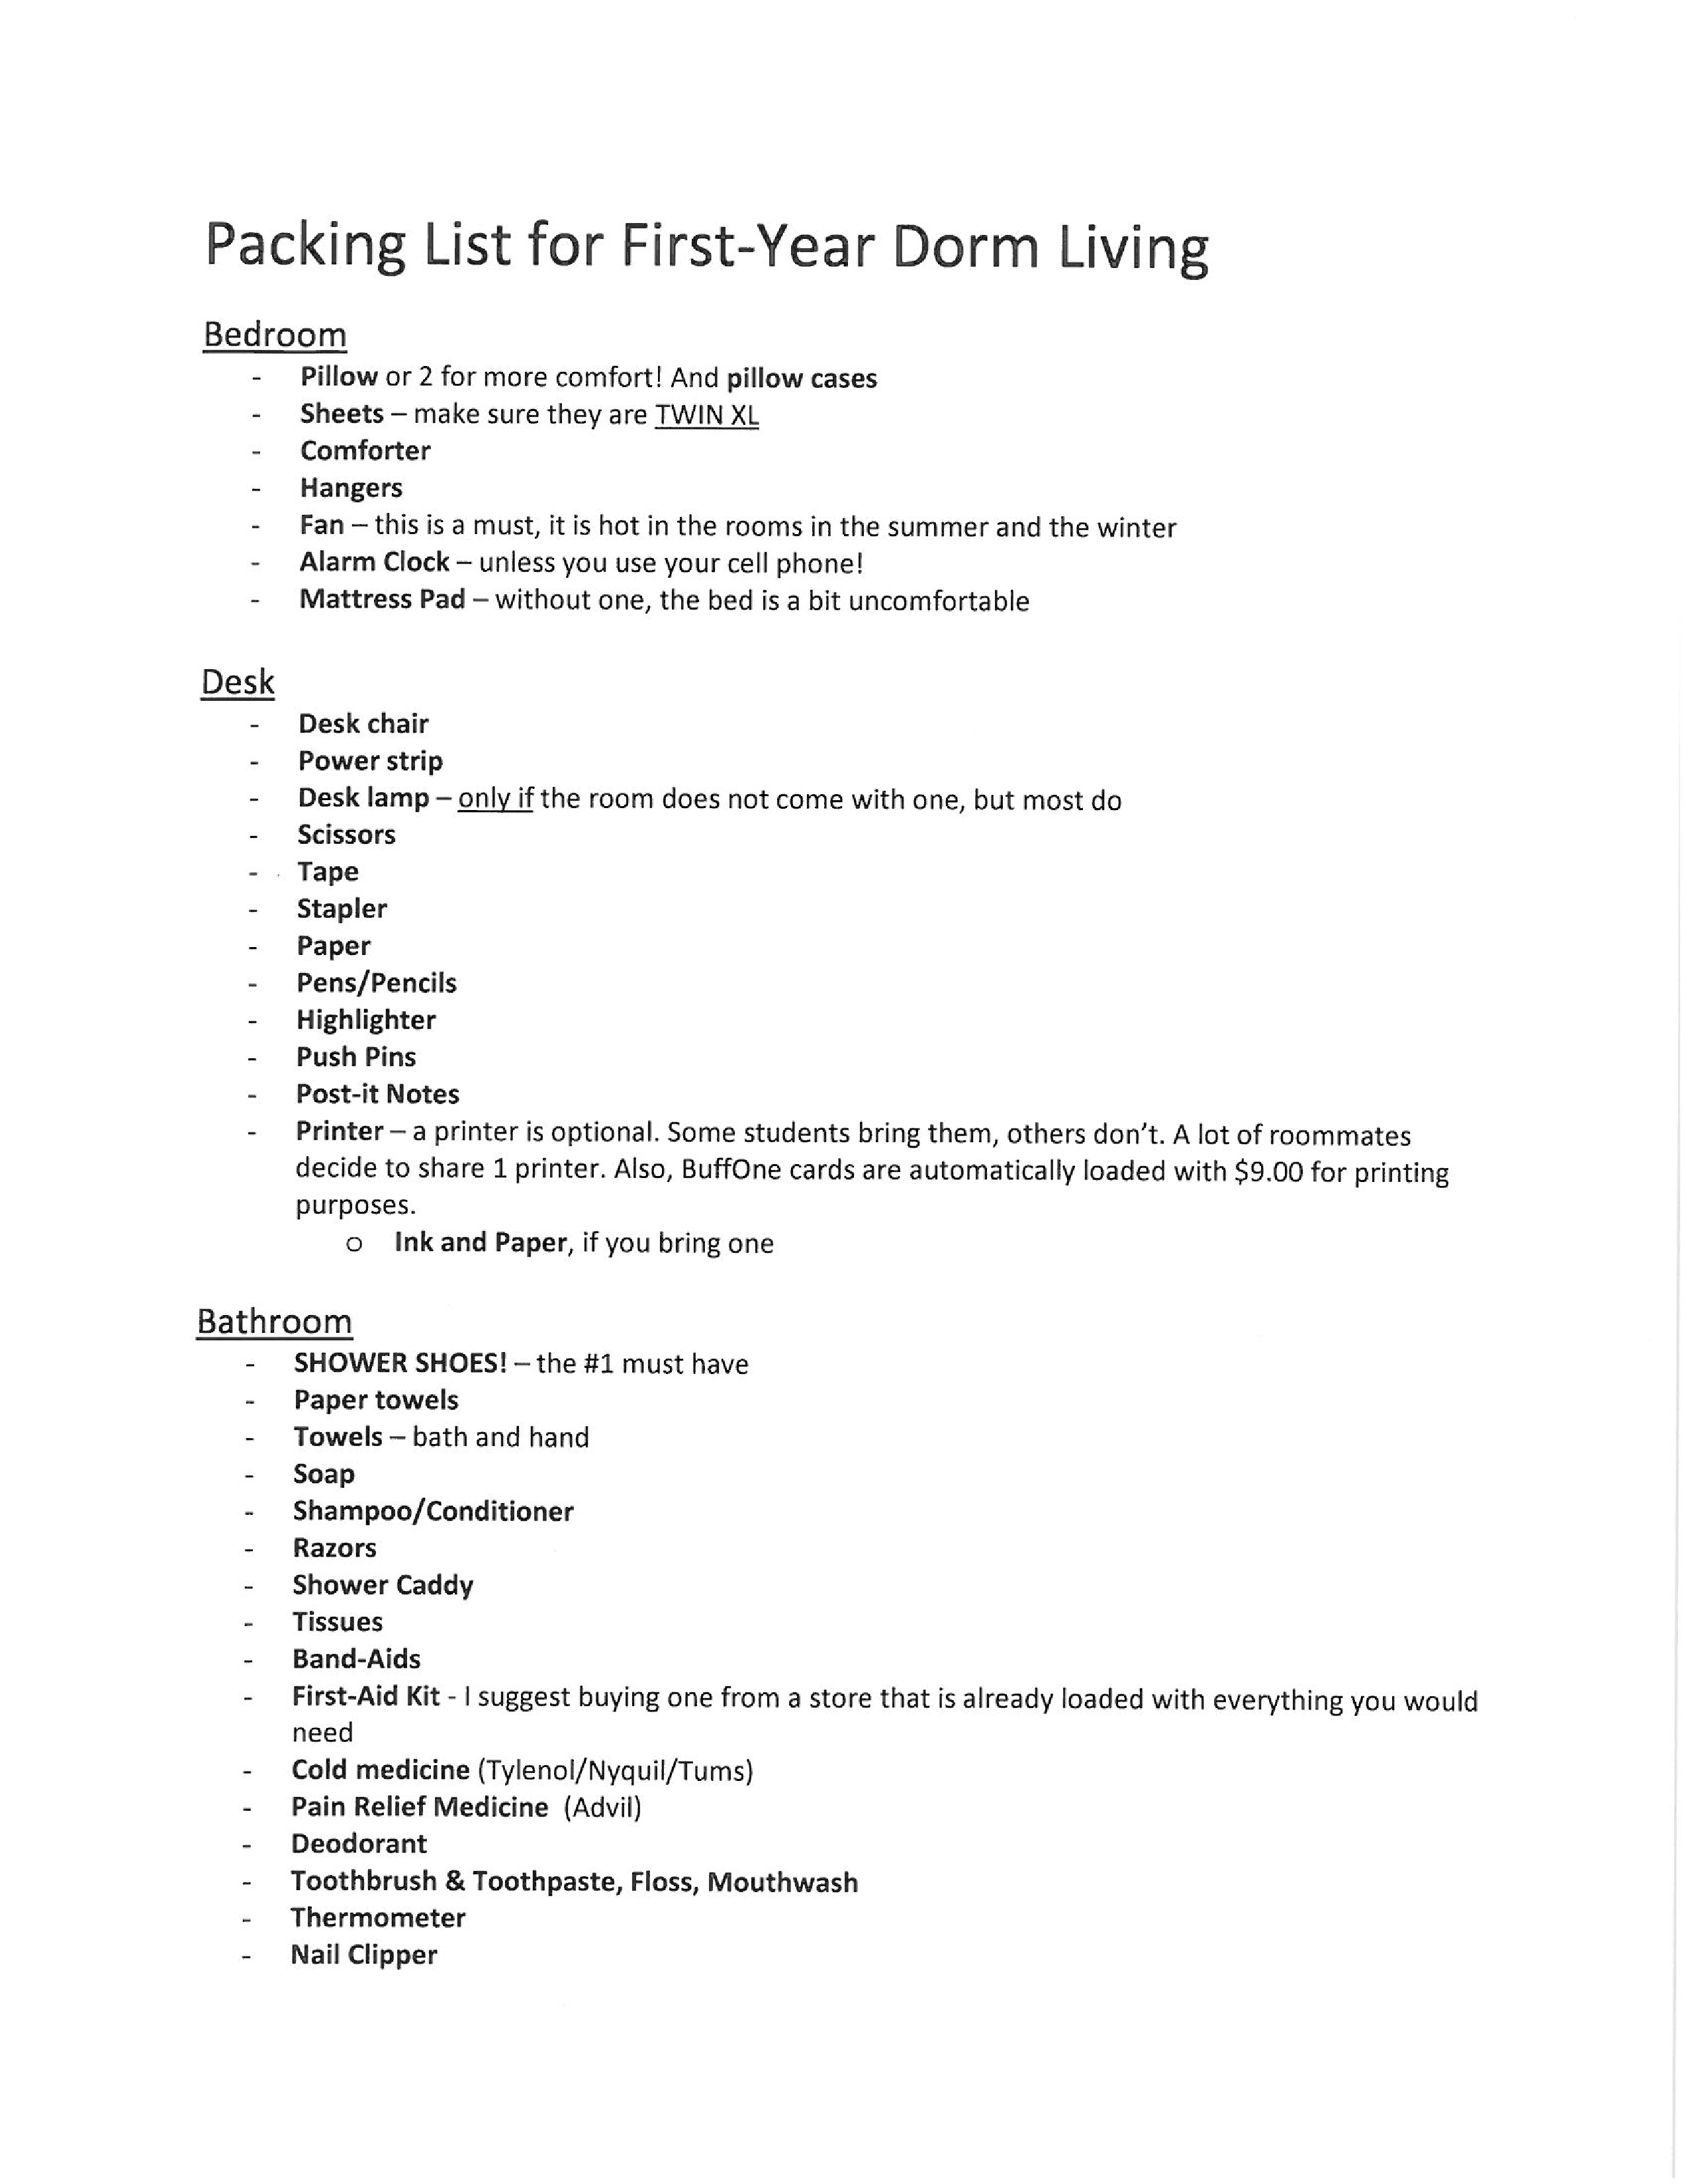 dorm room packing checklist plantilla imagen principal